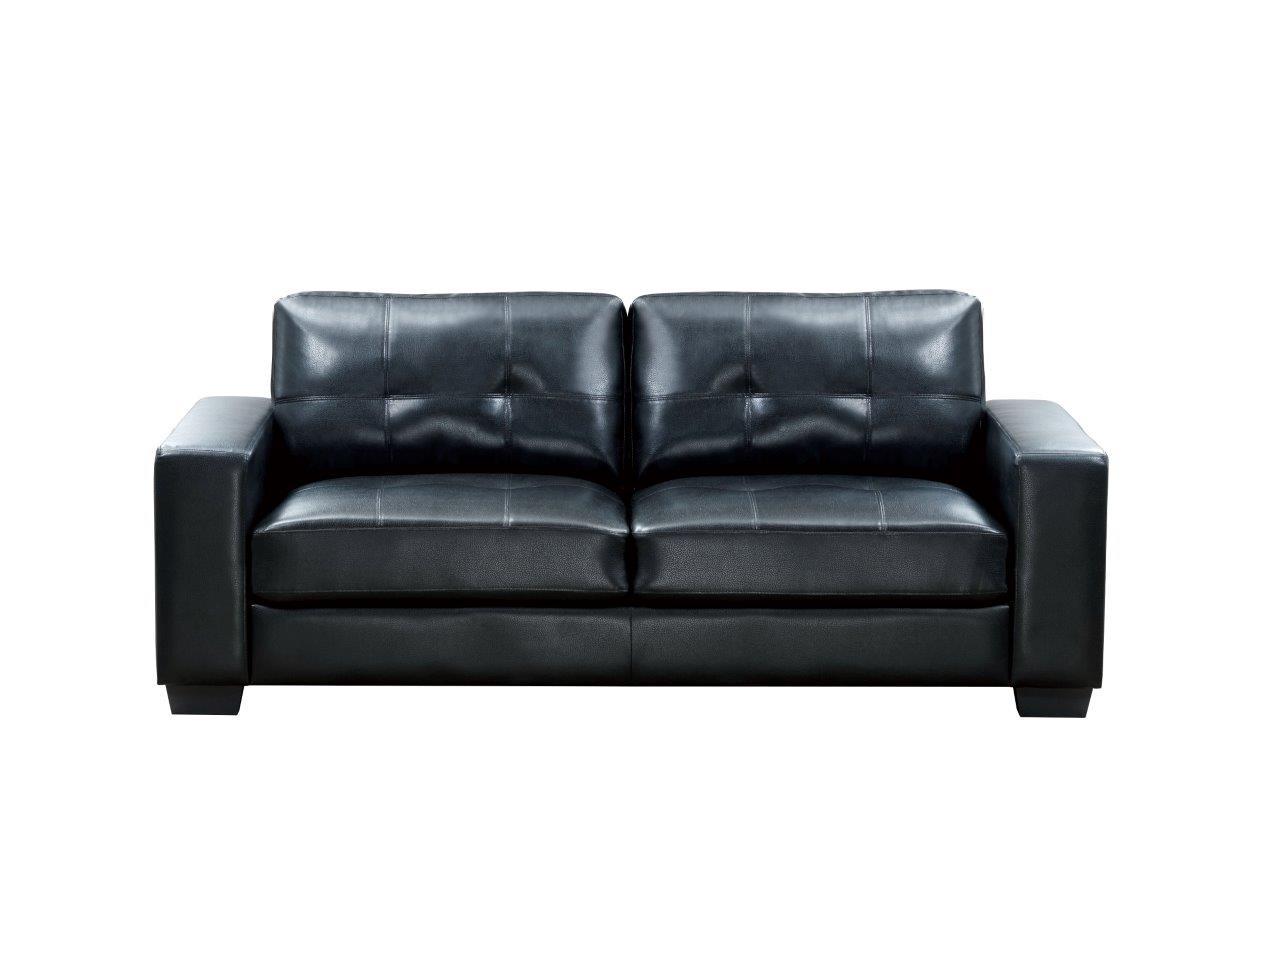 

    
Global Furniture U803 BL Modern Black Leather Gel Living Room Sofa Set 3 Pcs
